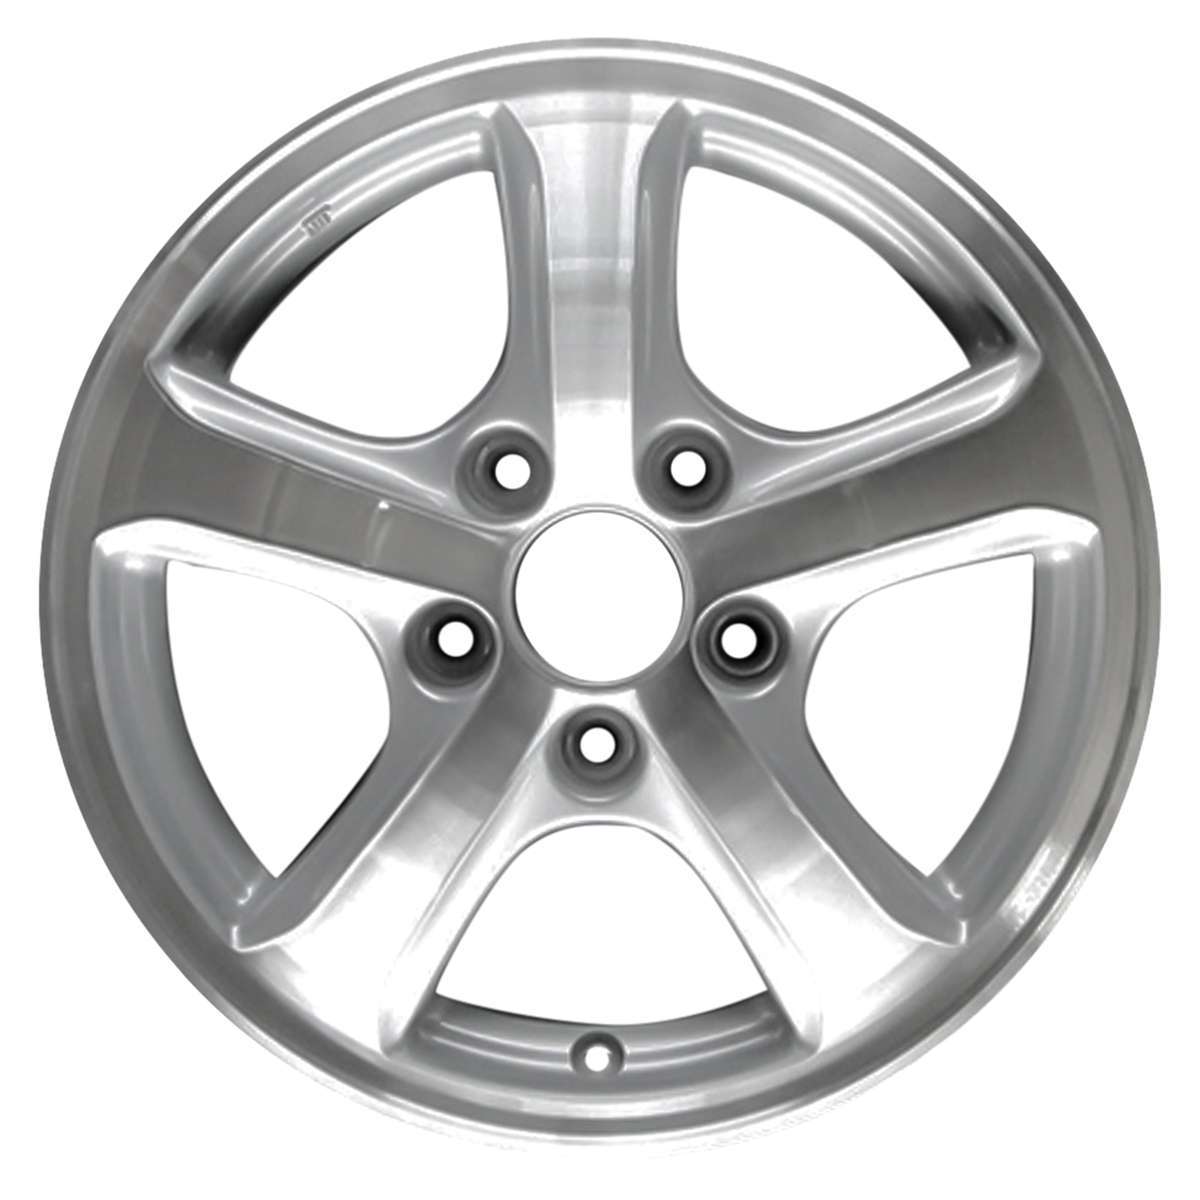 2012 Honda Civic 15" OEM Wheel Rim W64027MS